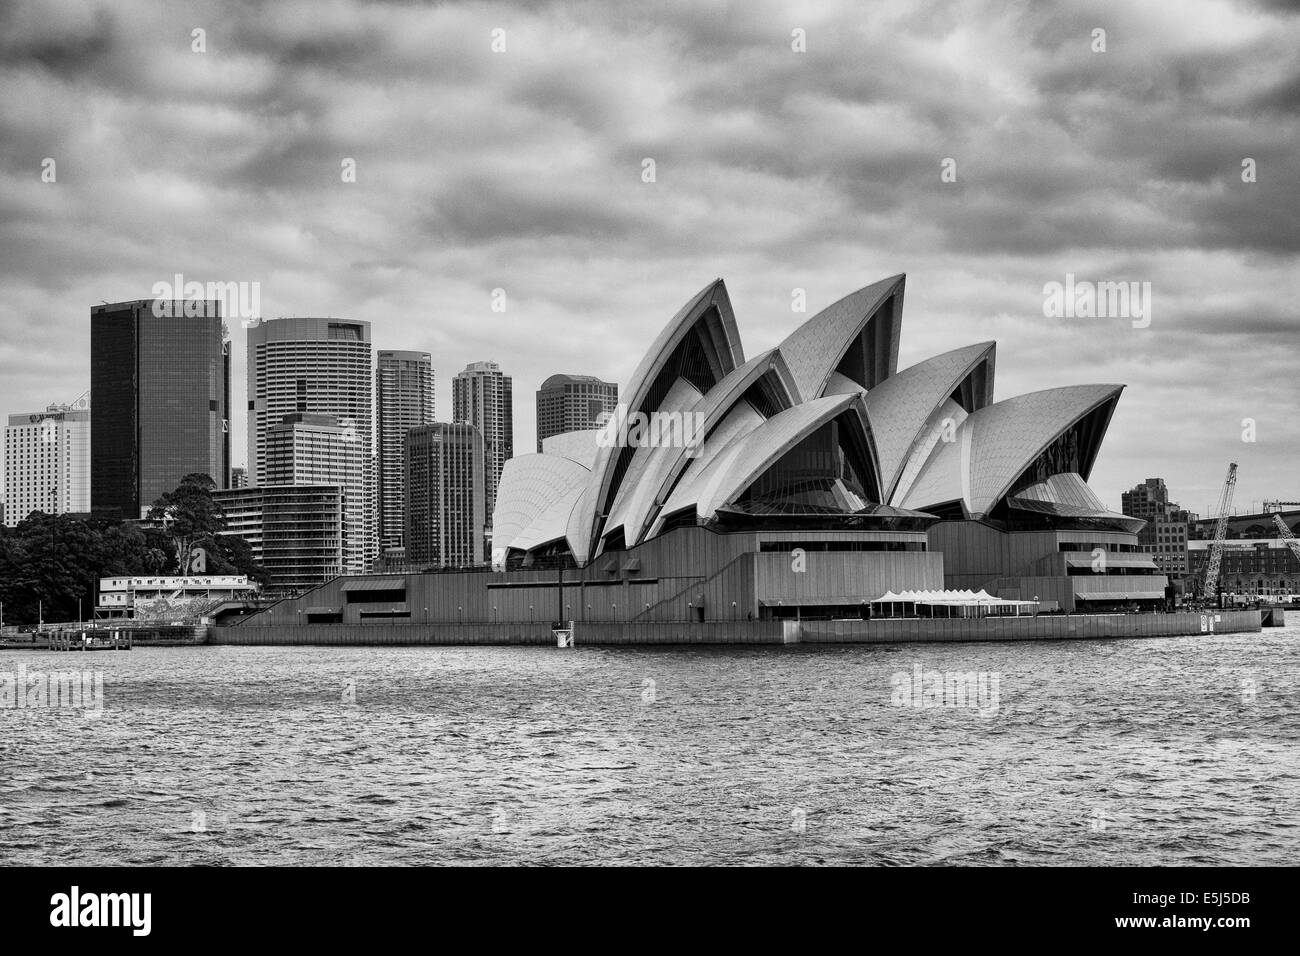 Sydney Opera House am Bennelong Point, von Bord der Manly Fähre im Hafen von Sydney, Australien. Schwarz-weiß-Fotografie. Juli 2014 Stockfoto